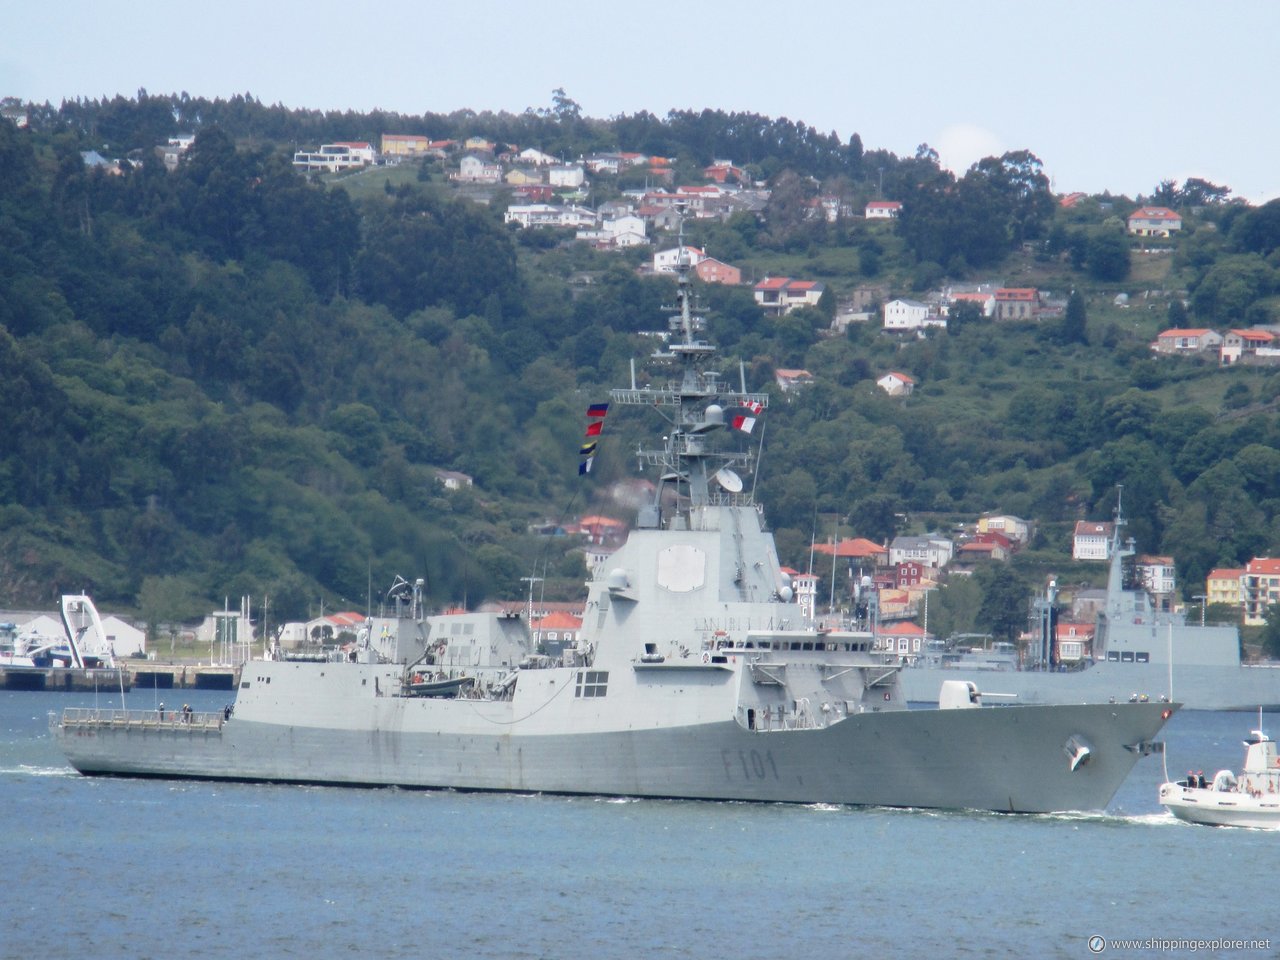 Esps Navy Ship